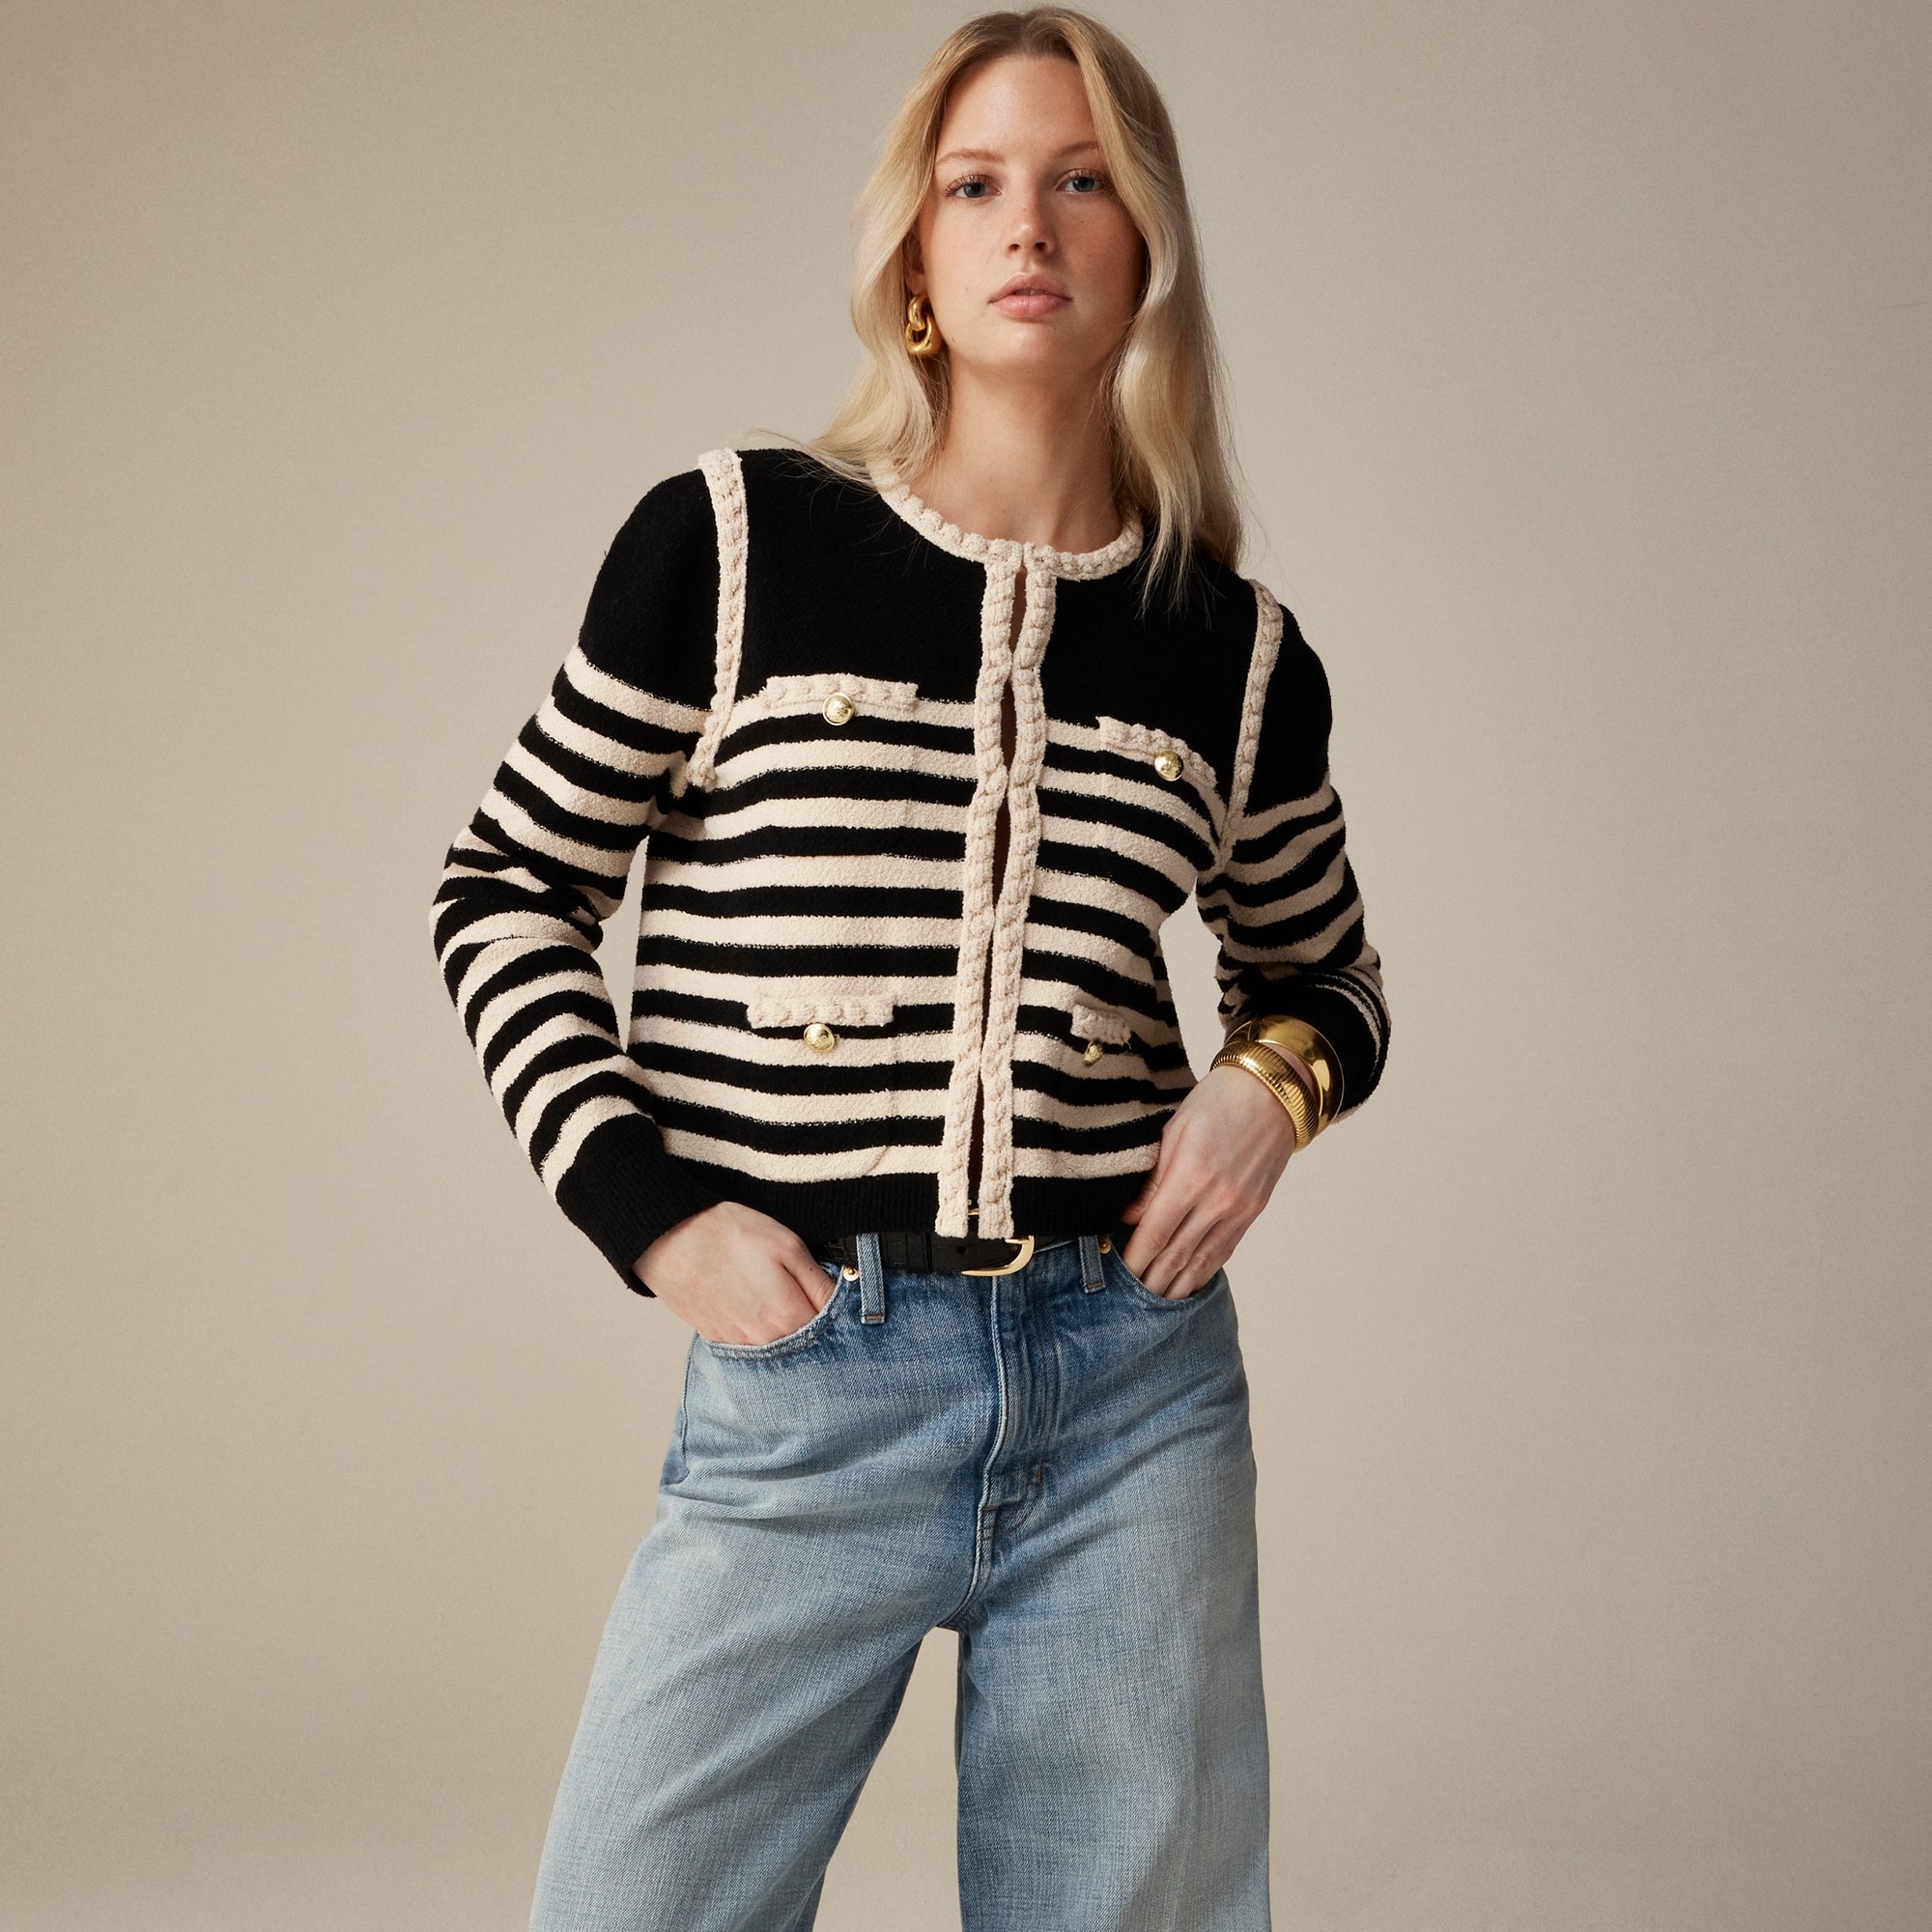  Odette sweater lady jacket in striped boucl&eacute;